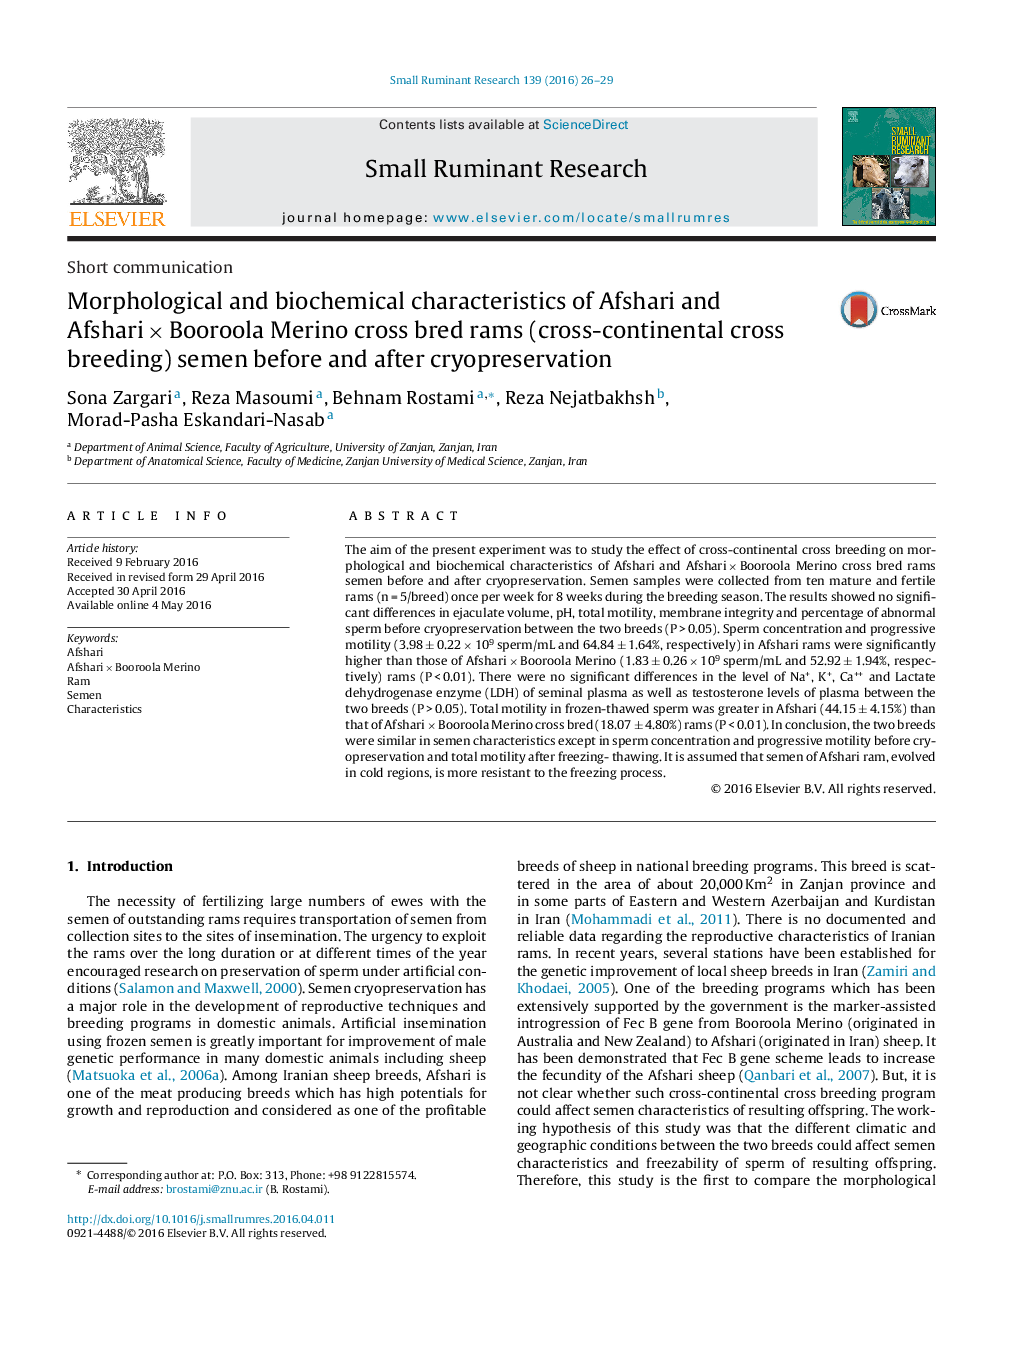 ویژگی های مورفولوژیکی و بیوشیمیایی مایع منی قوچ پرورشی دورگه مرینوس افشاری و افشاری × Booroola (پرورش متقابل میان قاره ای) قبل و بعد از انجماد